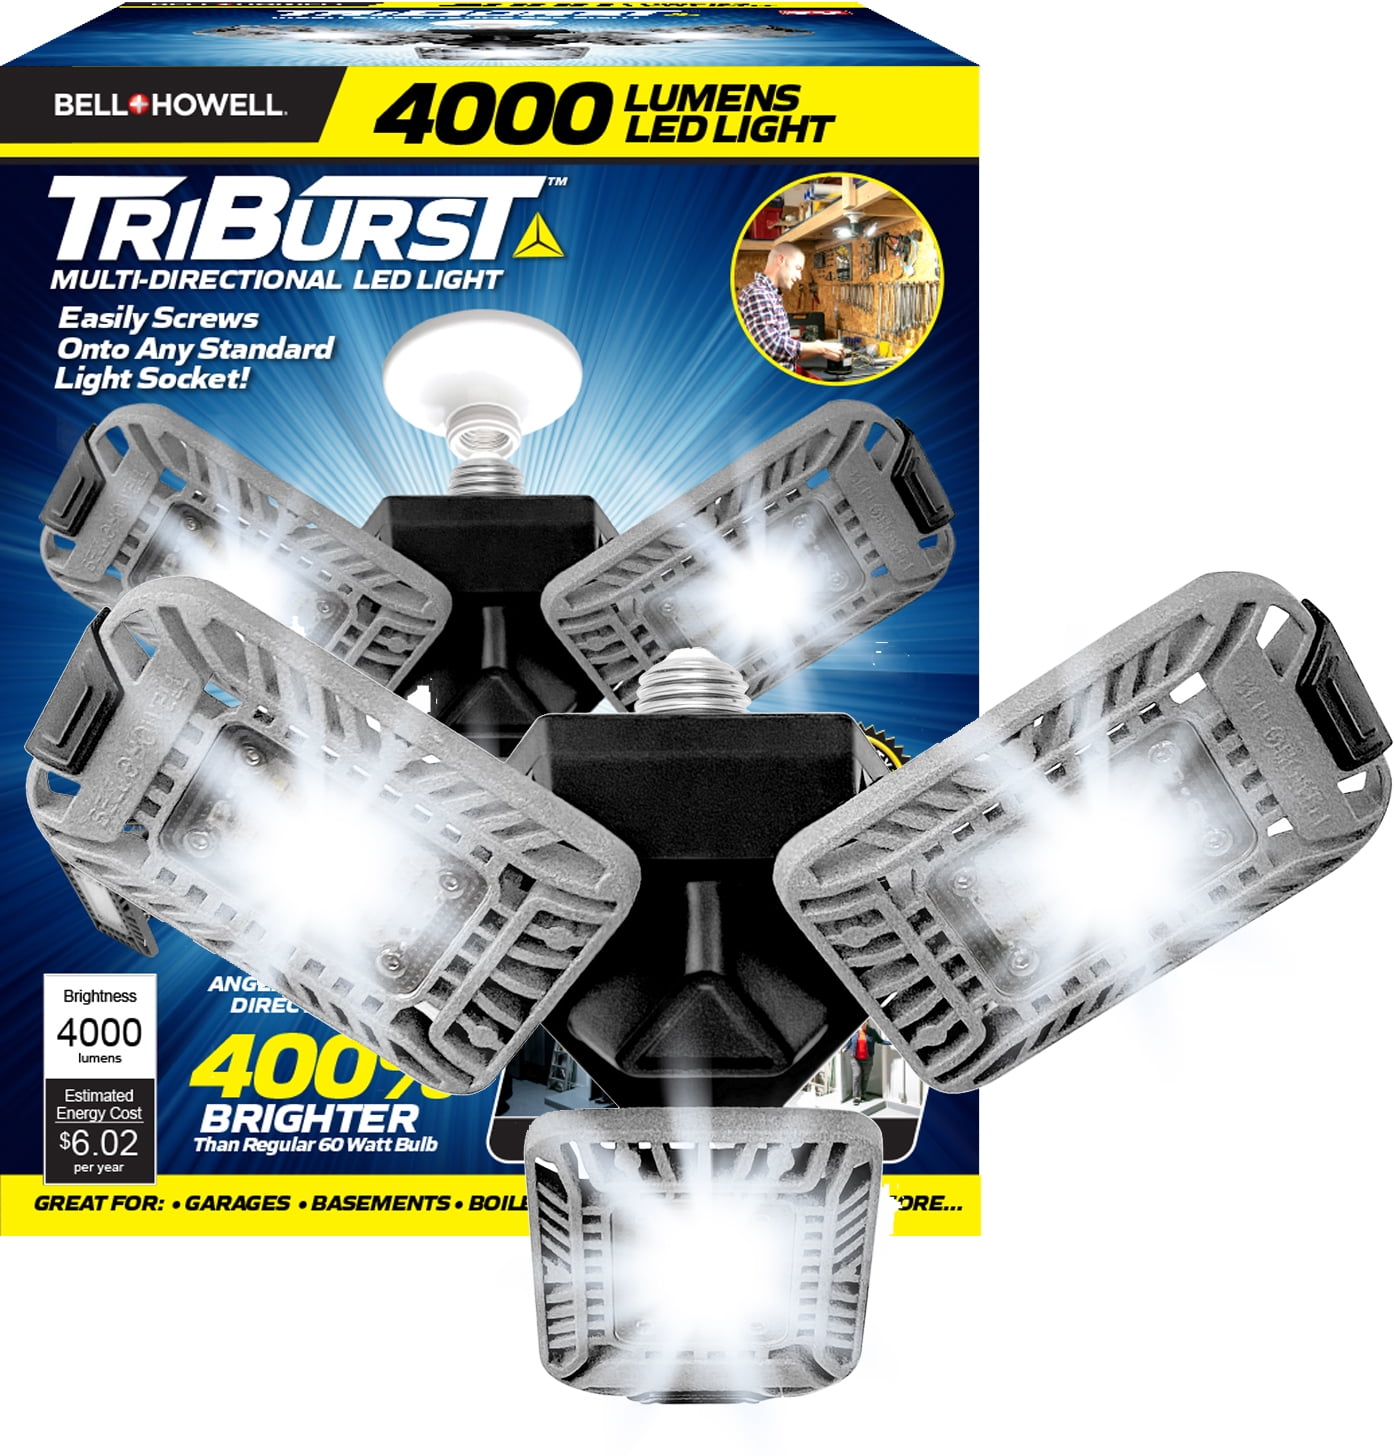 Details about   Strong Triburst Multi-Directional 7200 Lumen Super Bright LED Garage Light Defor 